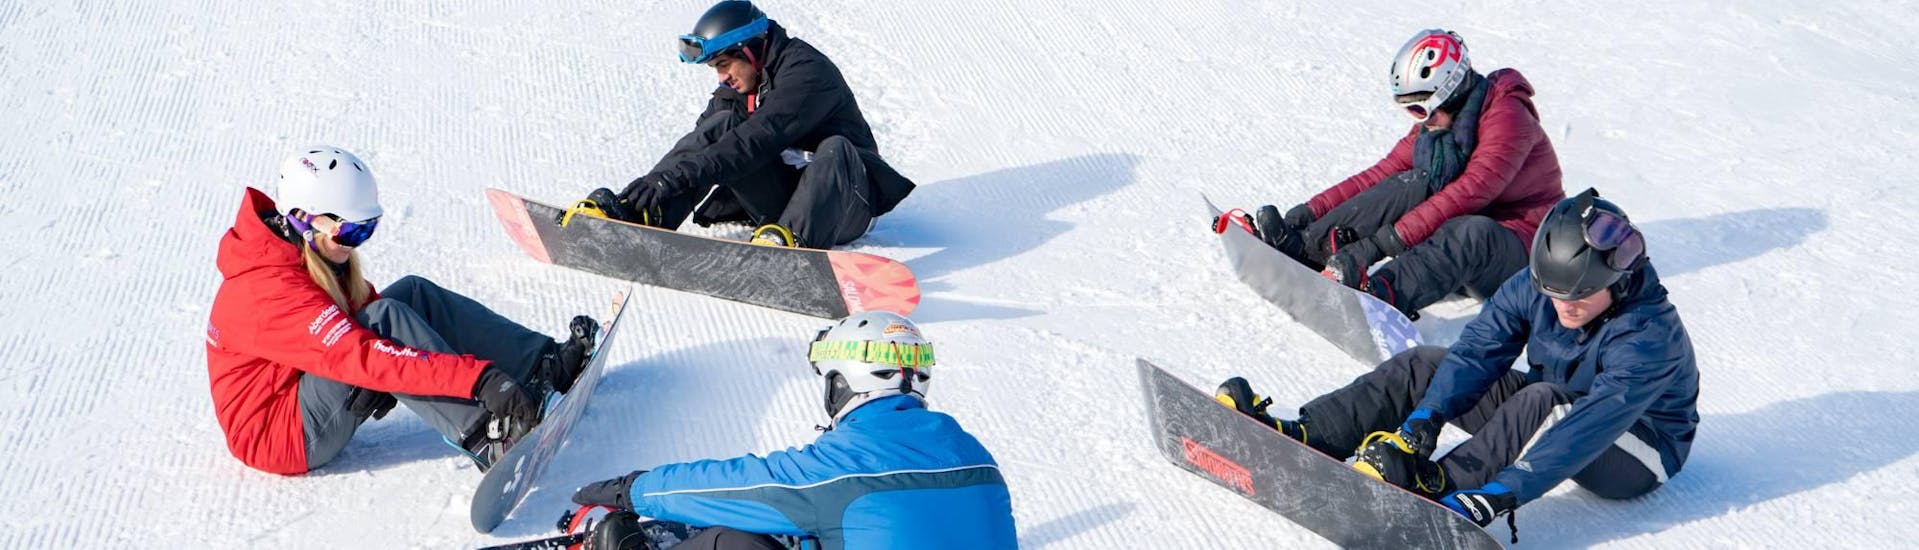 Snowboardlessen voor volwassenen + Snowboardverhuur en Transfer vanaf Interlaken.